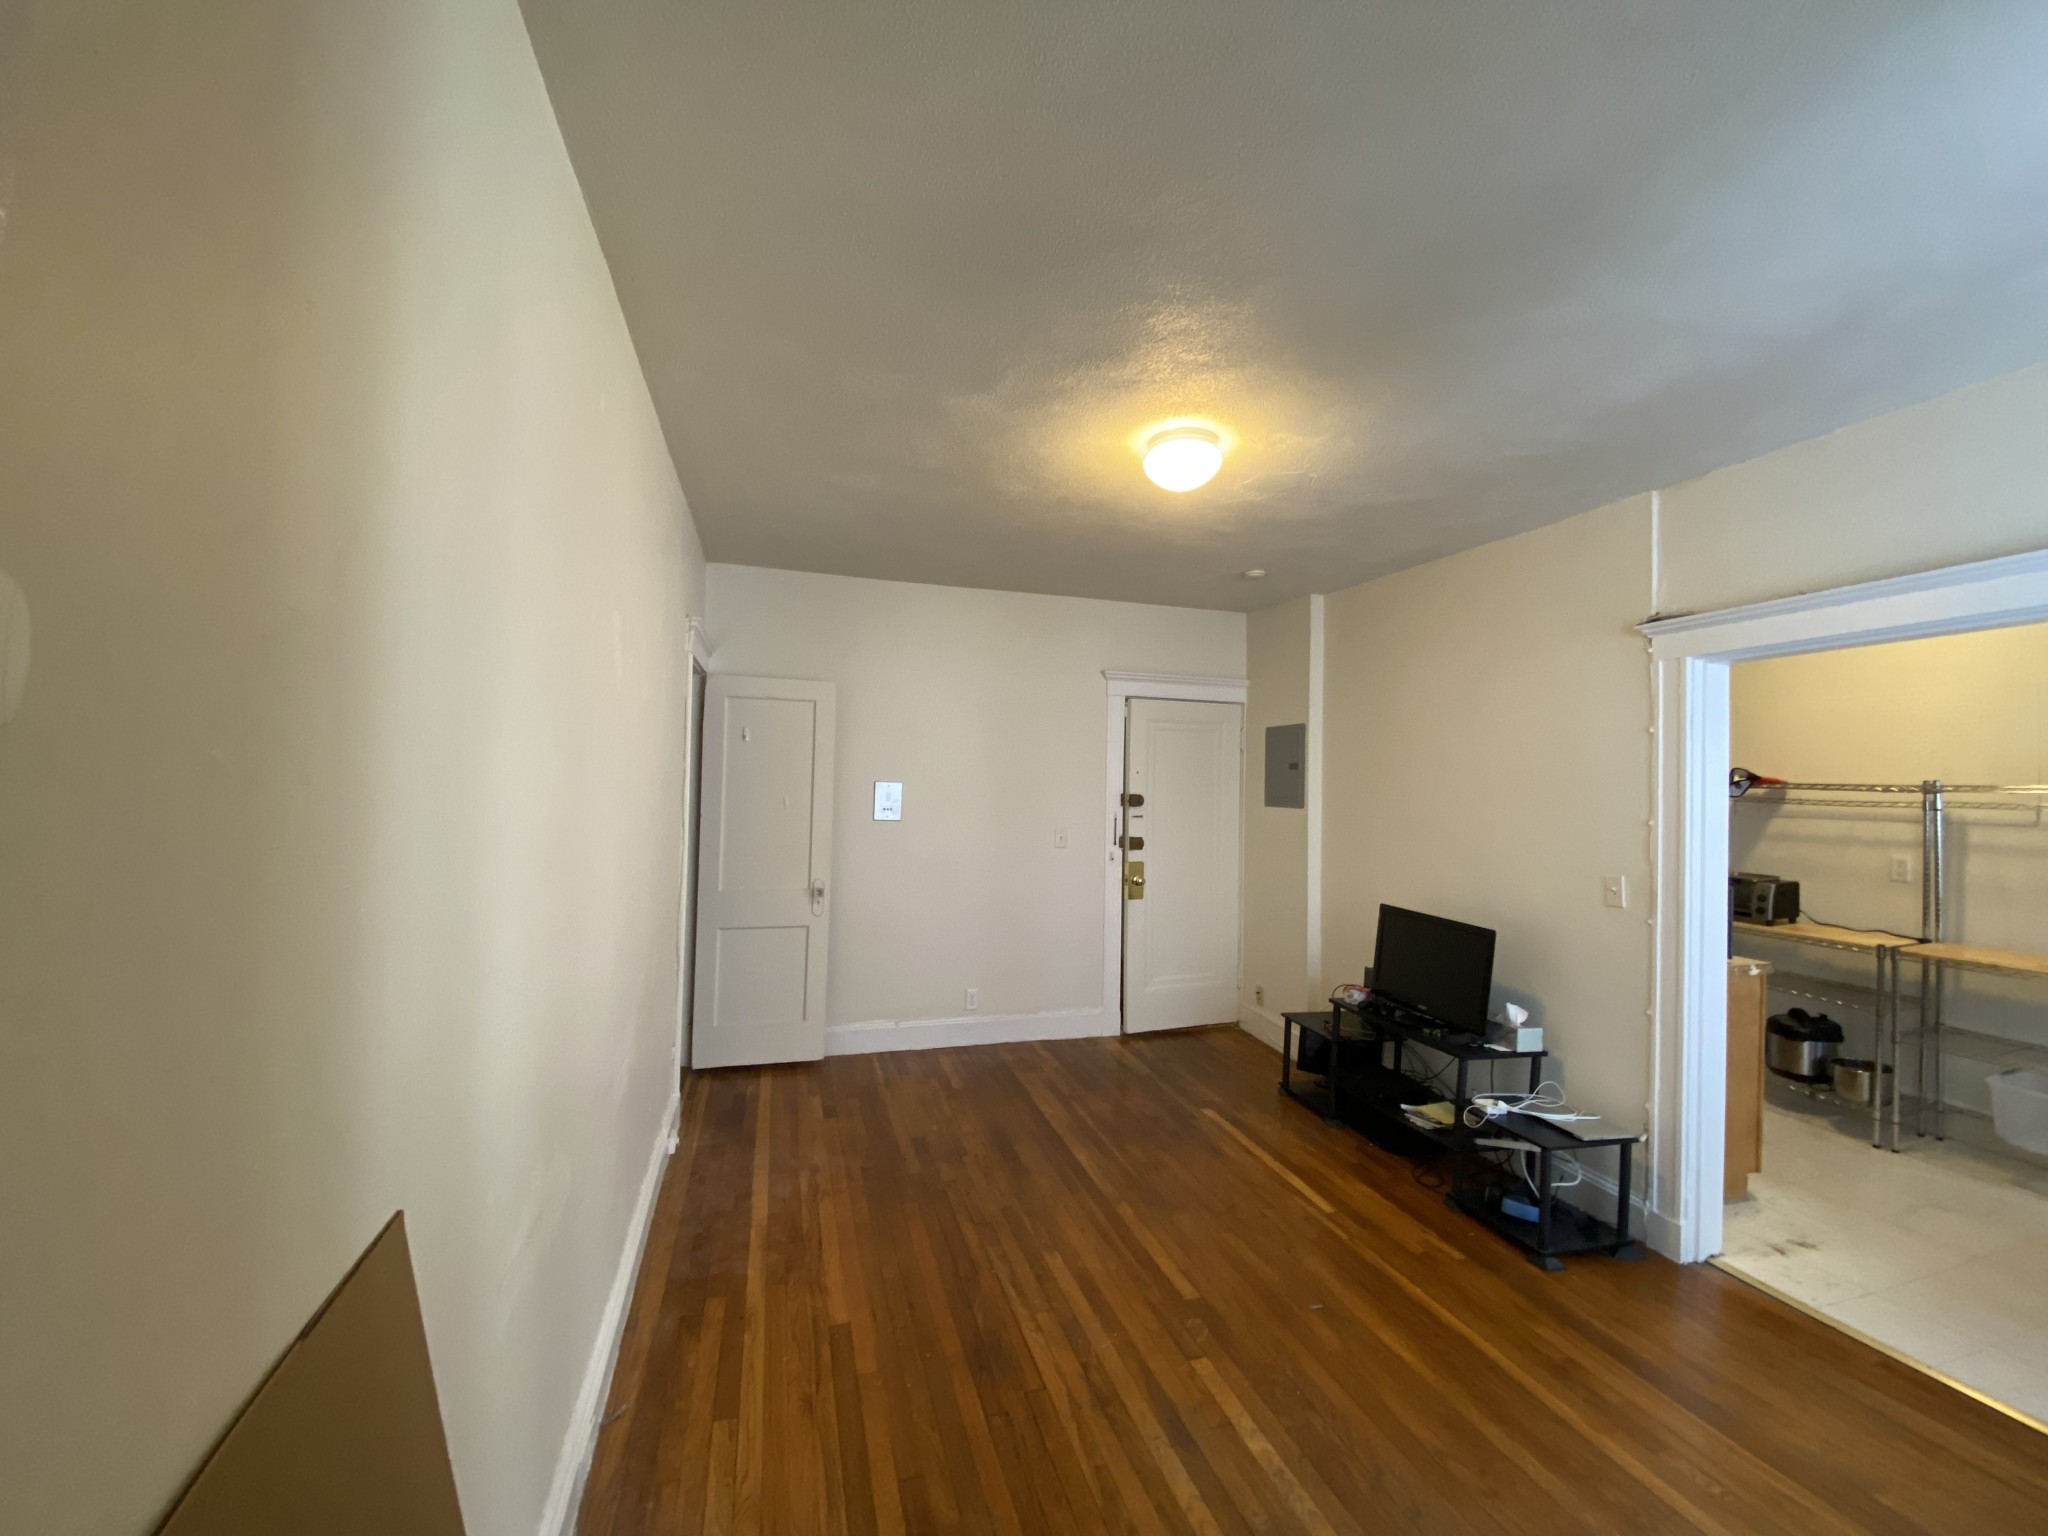 Photos of apartment on Brighton Ave.,Boston MA 02134